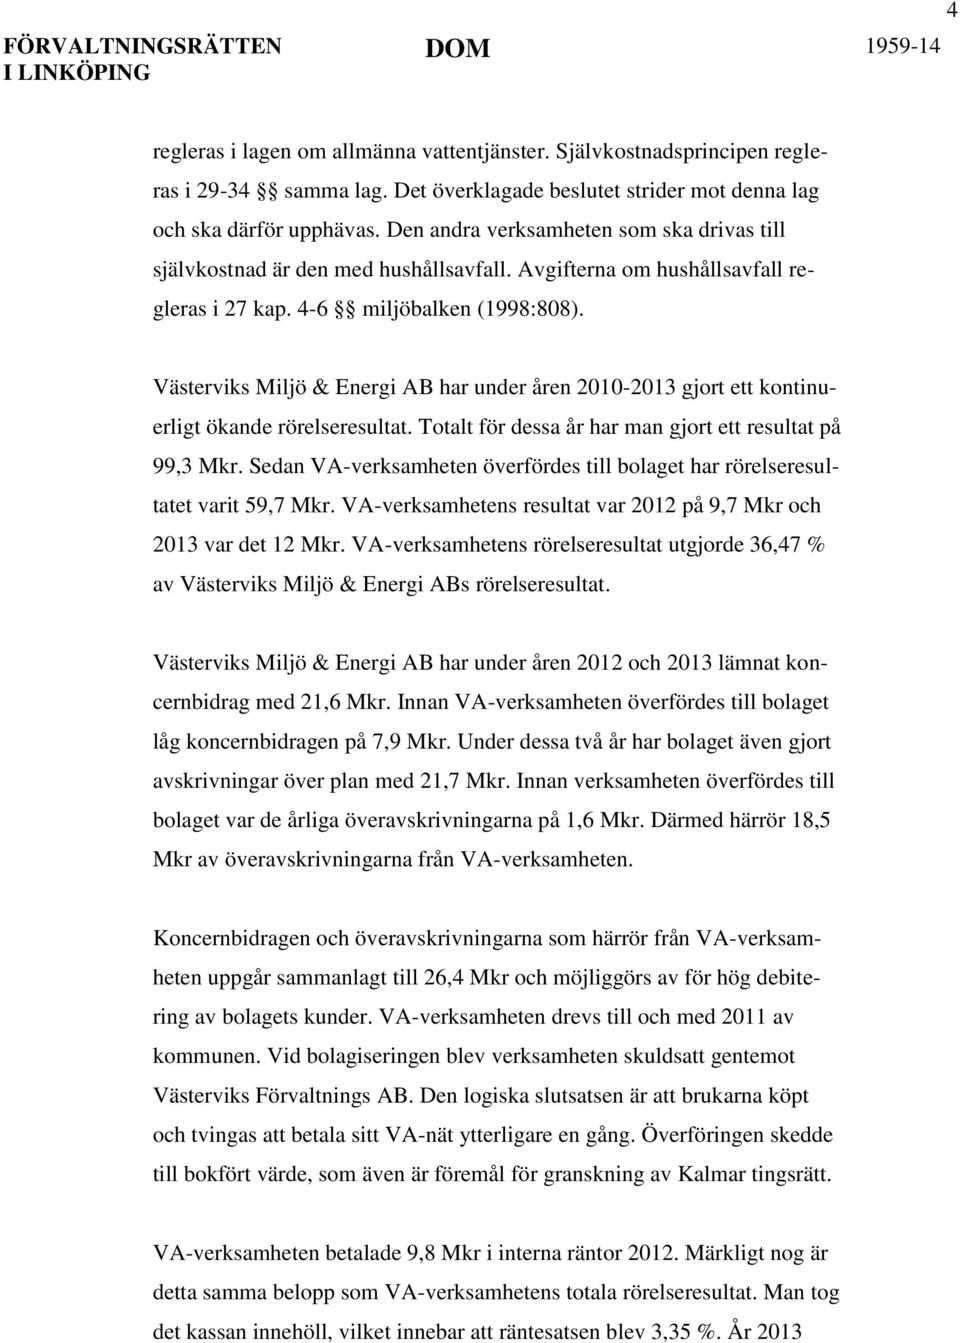 Västerviks Miljö & Energi AB har under åren 2010-2013 gjort ett kontinuerligt ökande rörelseresultat. Totalt för dessa år har man gjort ett resultat på 99,3 Mkr.